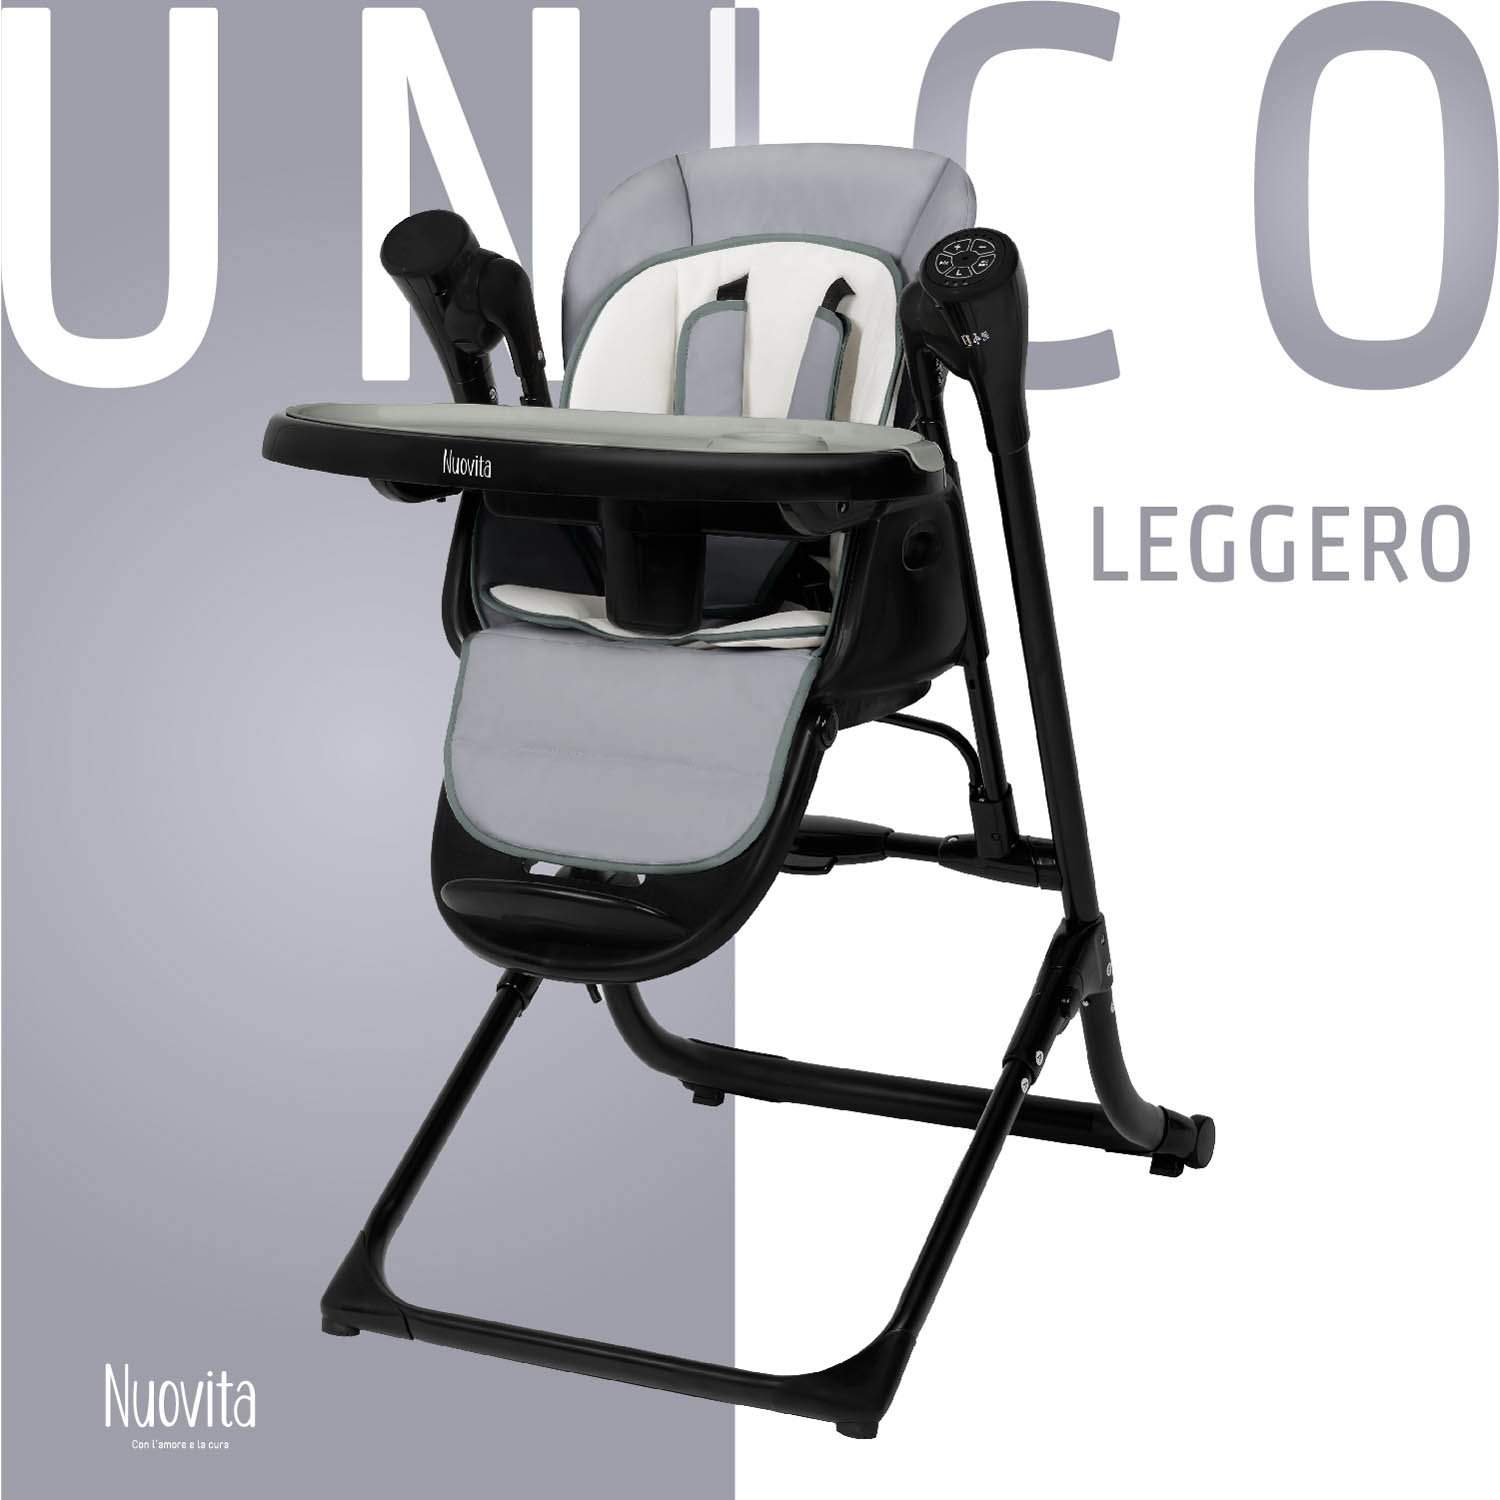 Стульчик для кормления с электронной функцией качения Nuovita Unico Leggero Nero серый